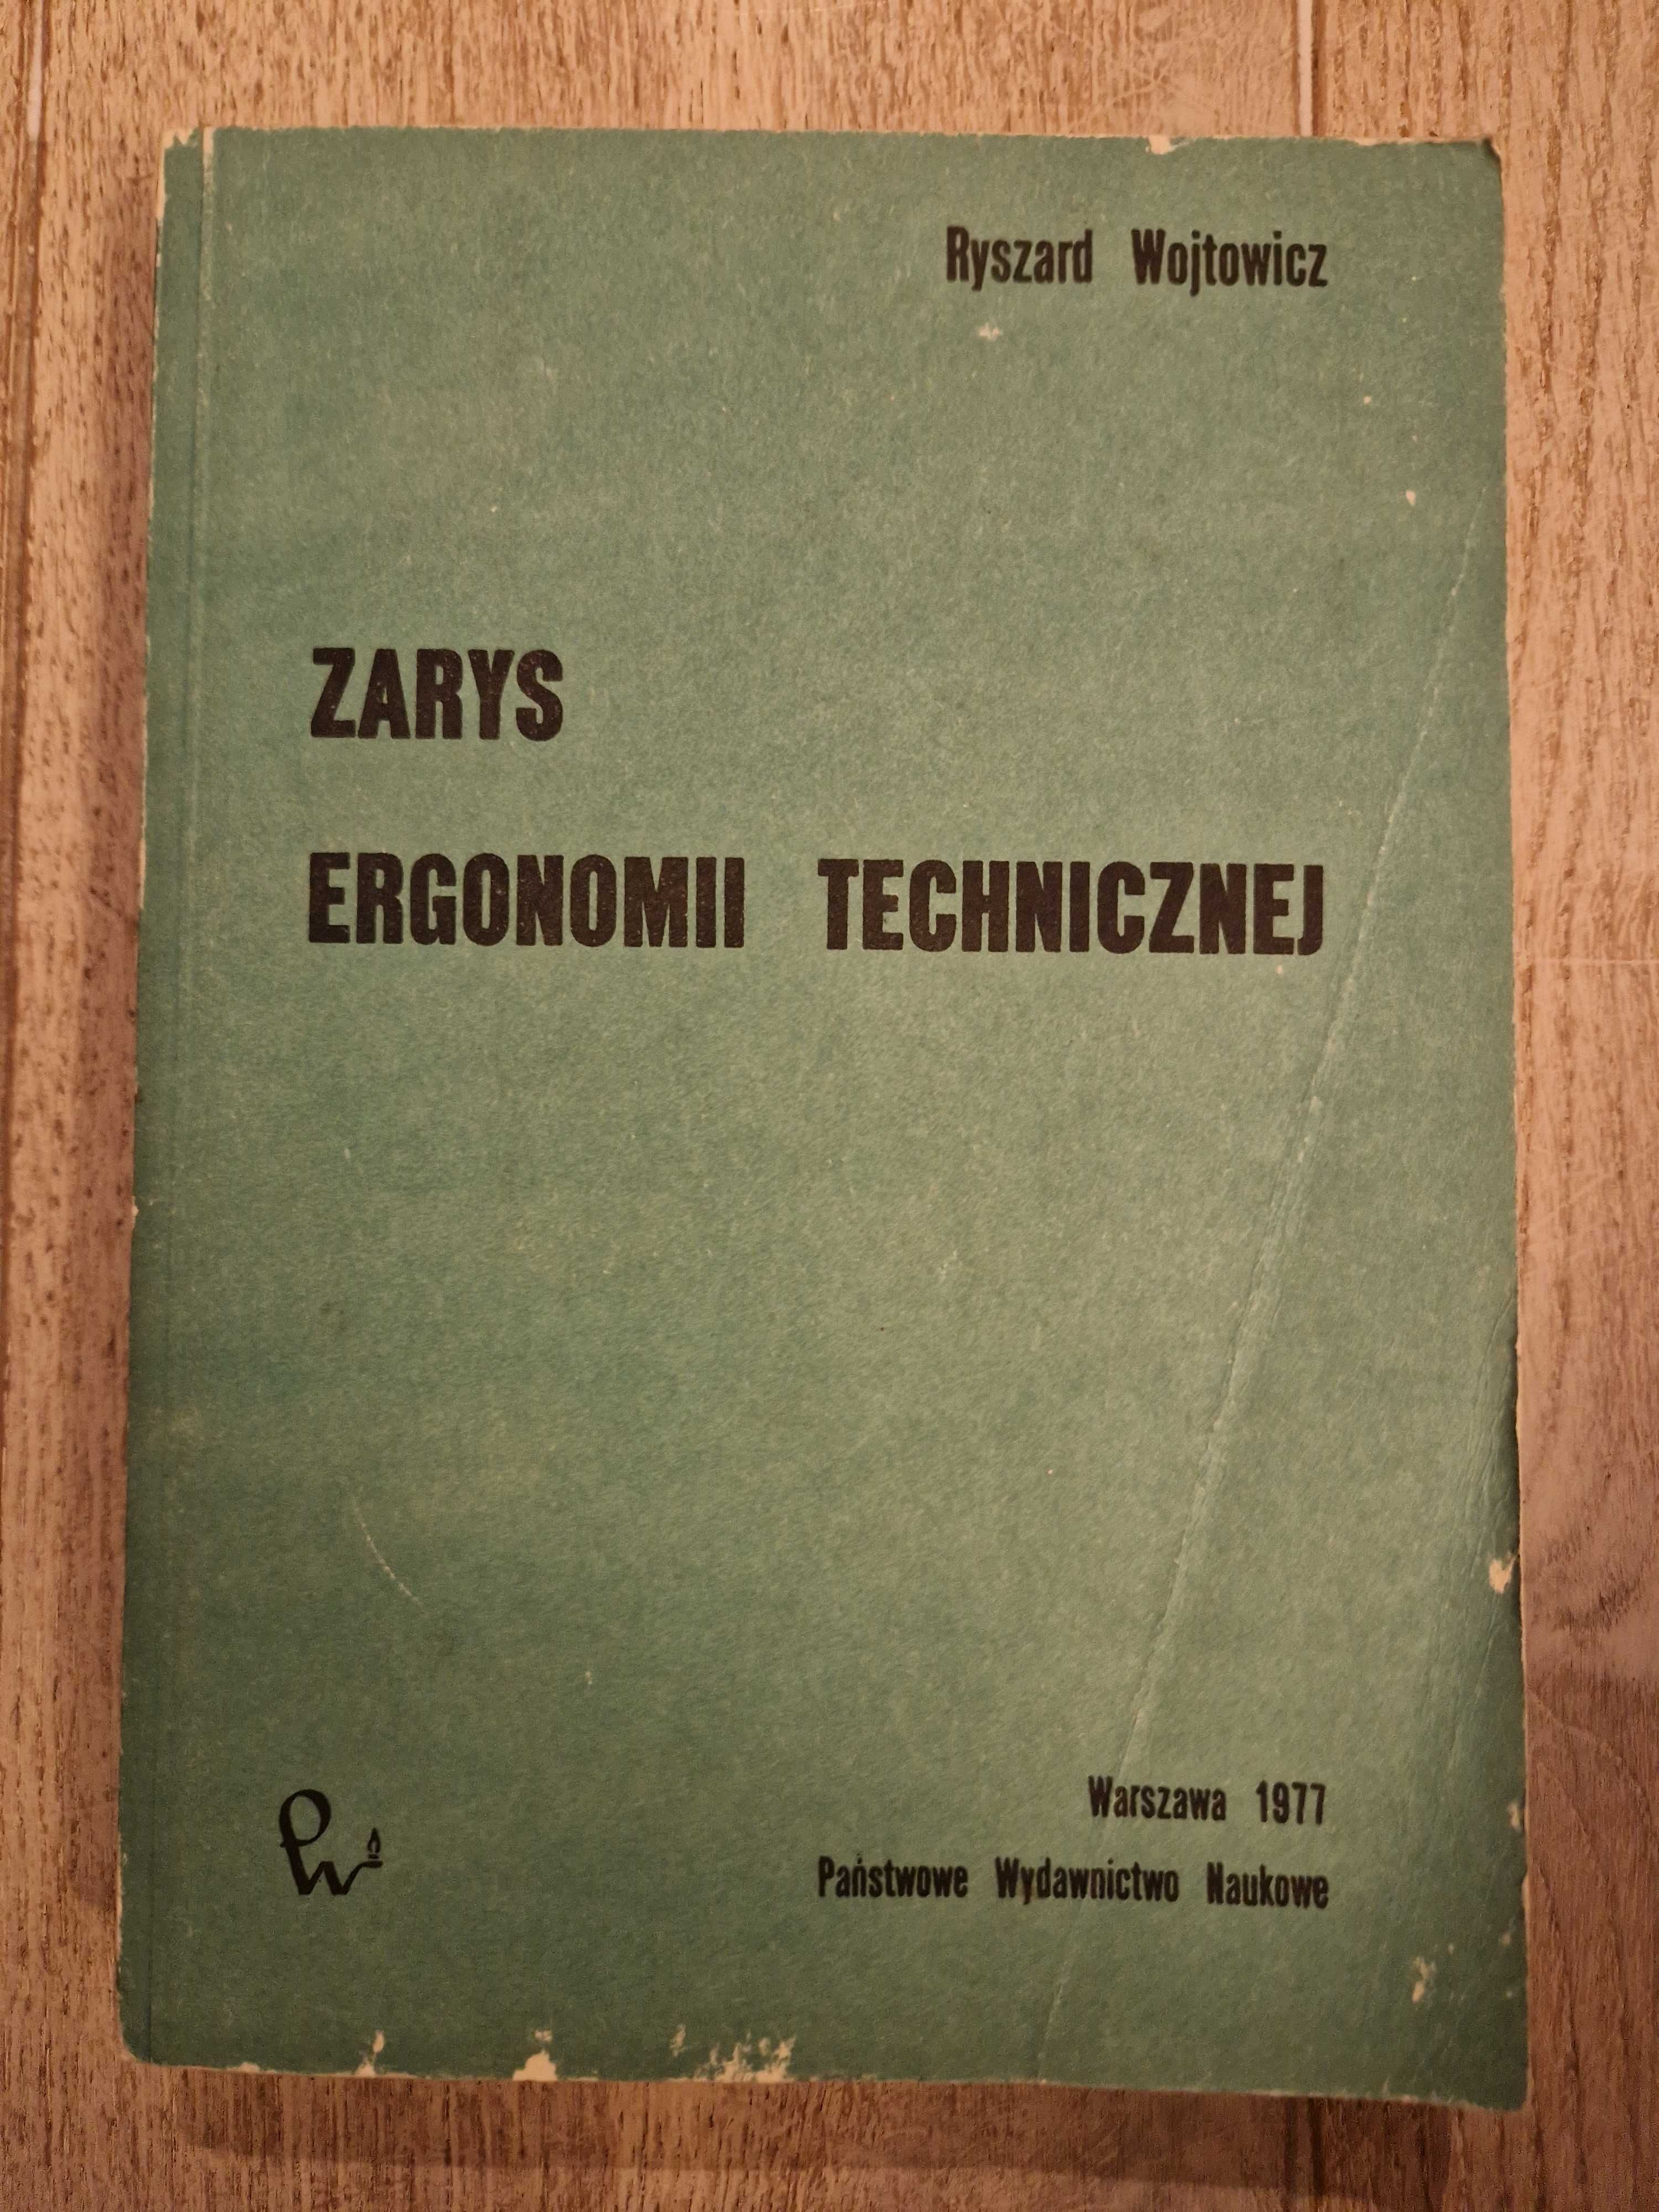 Zarys ergonomii technicznej, R. Wojtowicz